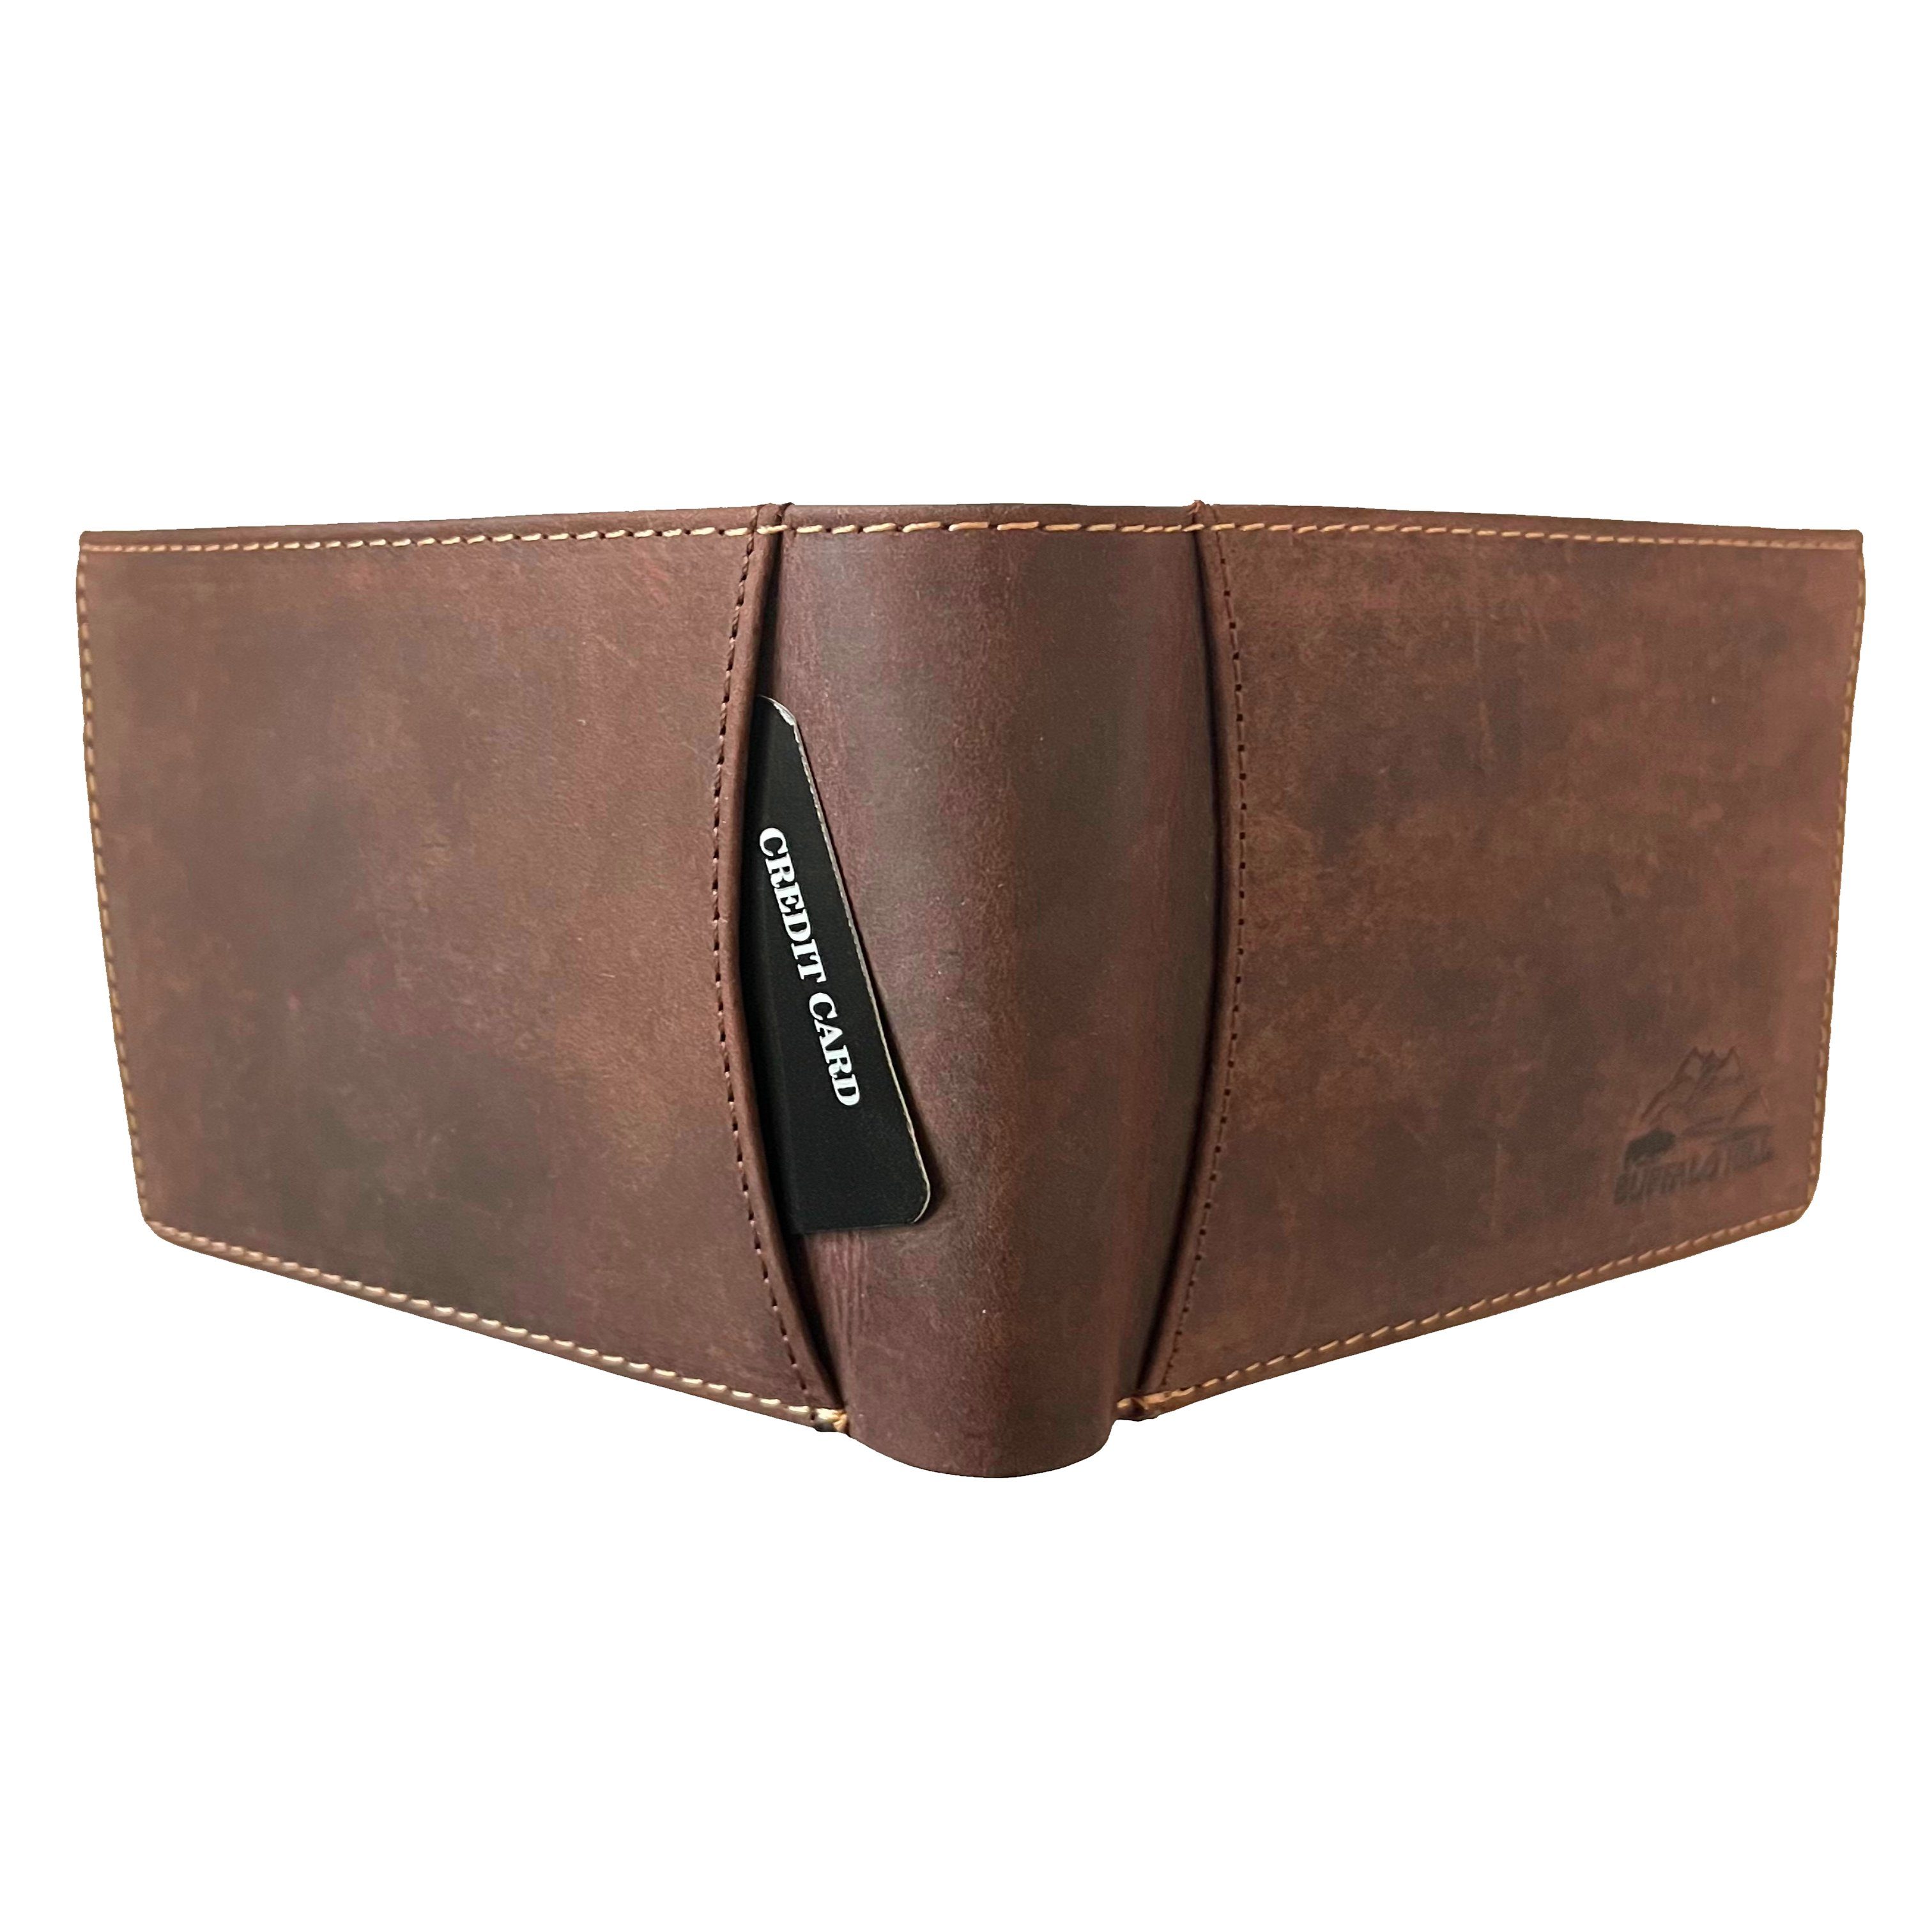 Geldbörse mit Querformat Wallet L&B elegantes RFID-Schutz, 8 integrierter Braun in Portemonnaie, Kartenfächern im Büffelleder